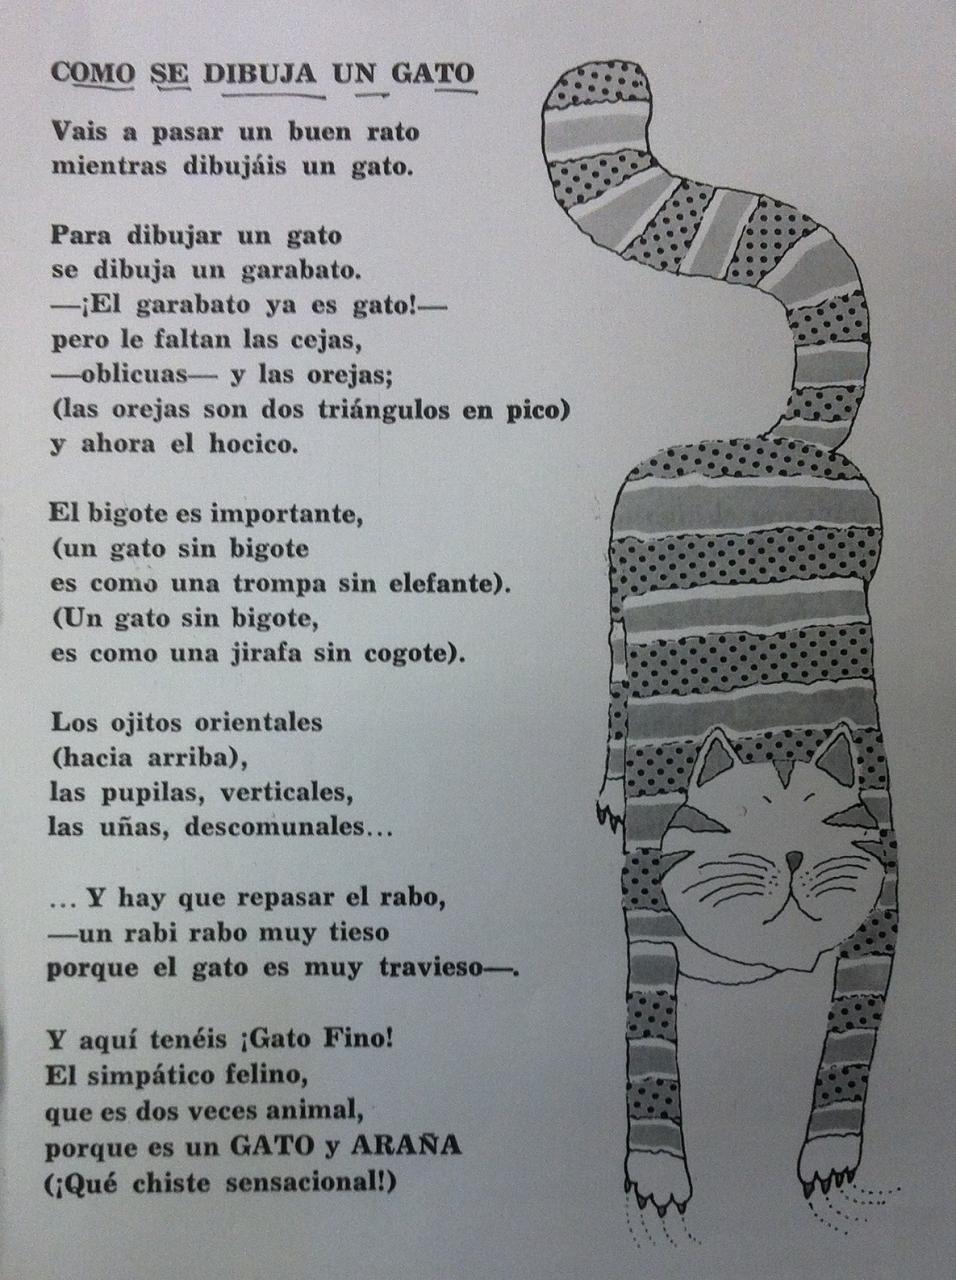 Los terceros de Cobeña: POESÍA: CÓMO DIBUJAR UN GATO (Gloria Fuertes), dibujos de Un Gato Gloria Fuertes, como dibujar Un Gato Gloria Fuertes paso a paso